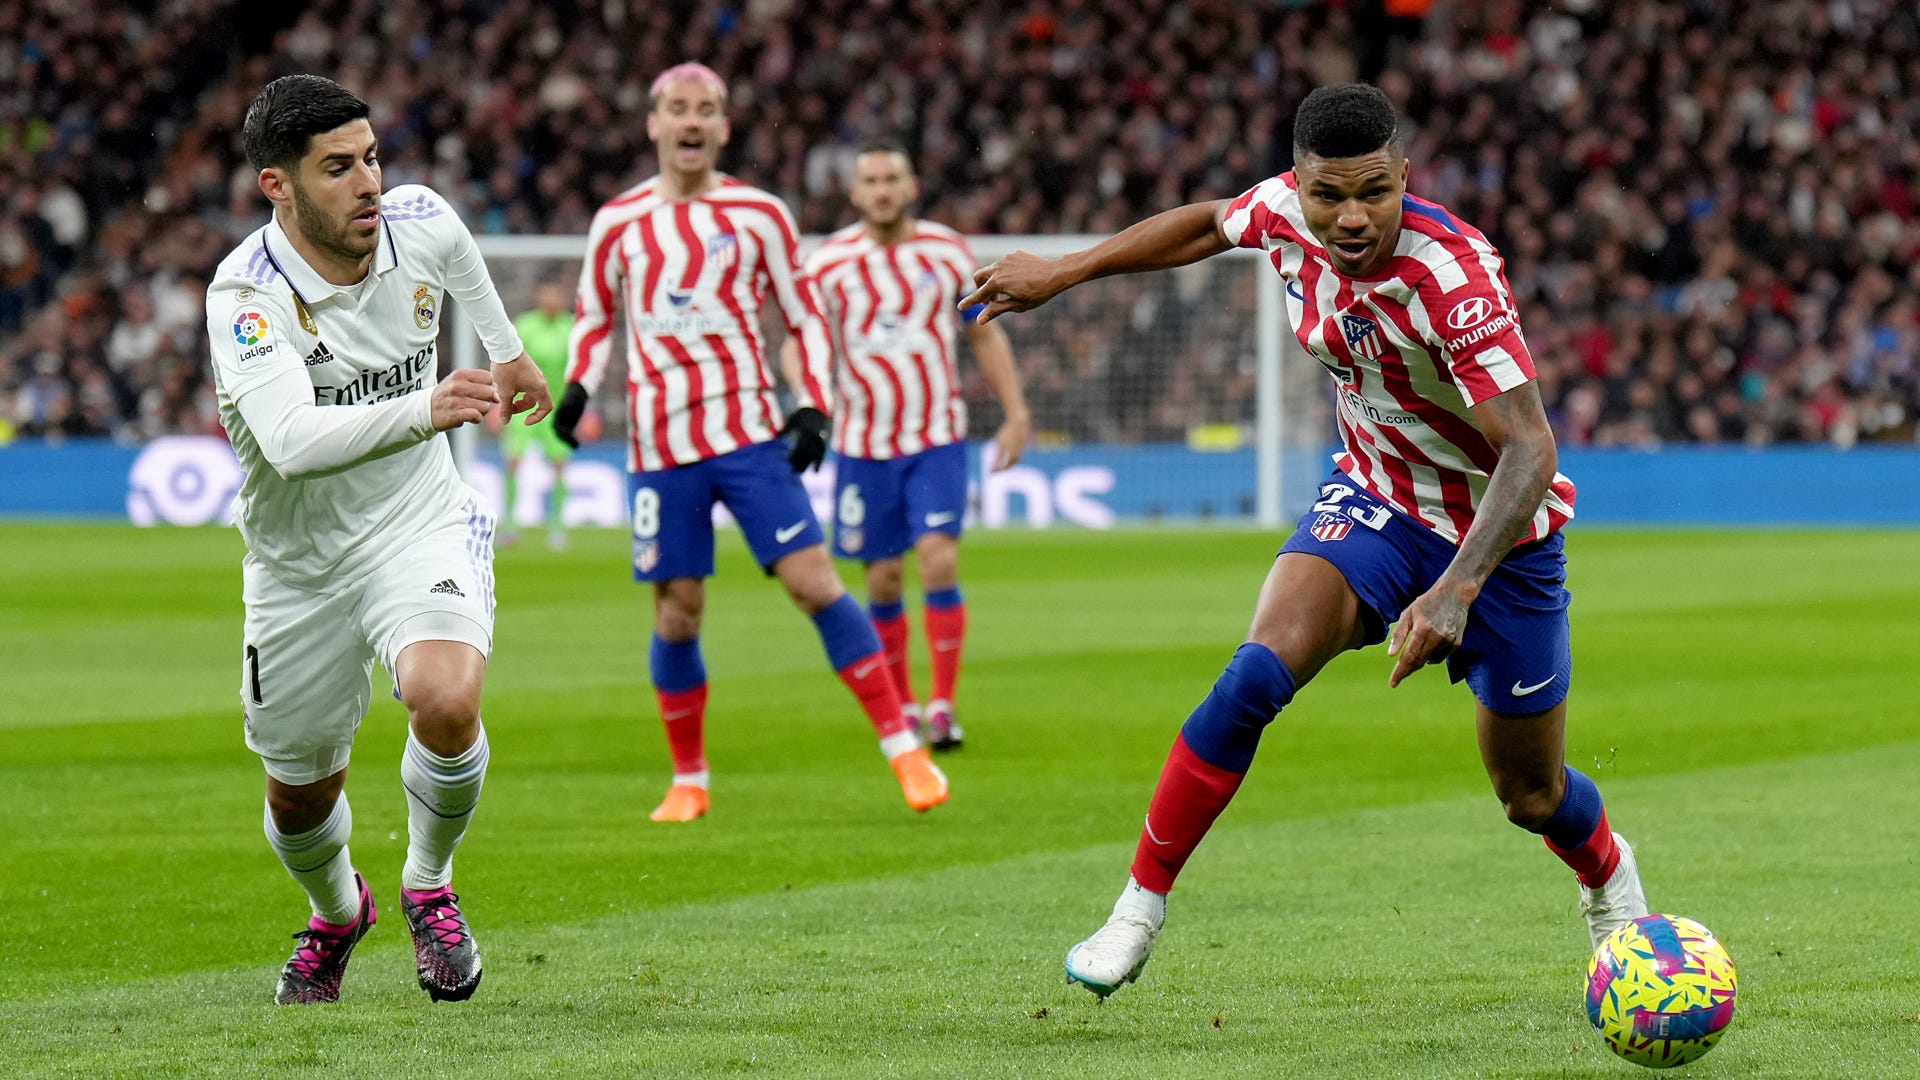 Hasil Liga Spanyol 2022/2023: Real Madrid VS Atlético Madrid Berakhir Imbang 1-1